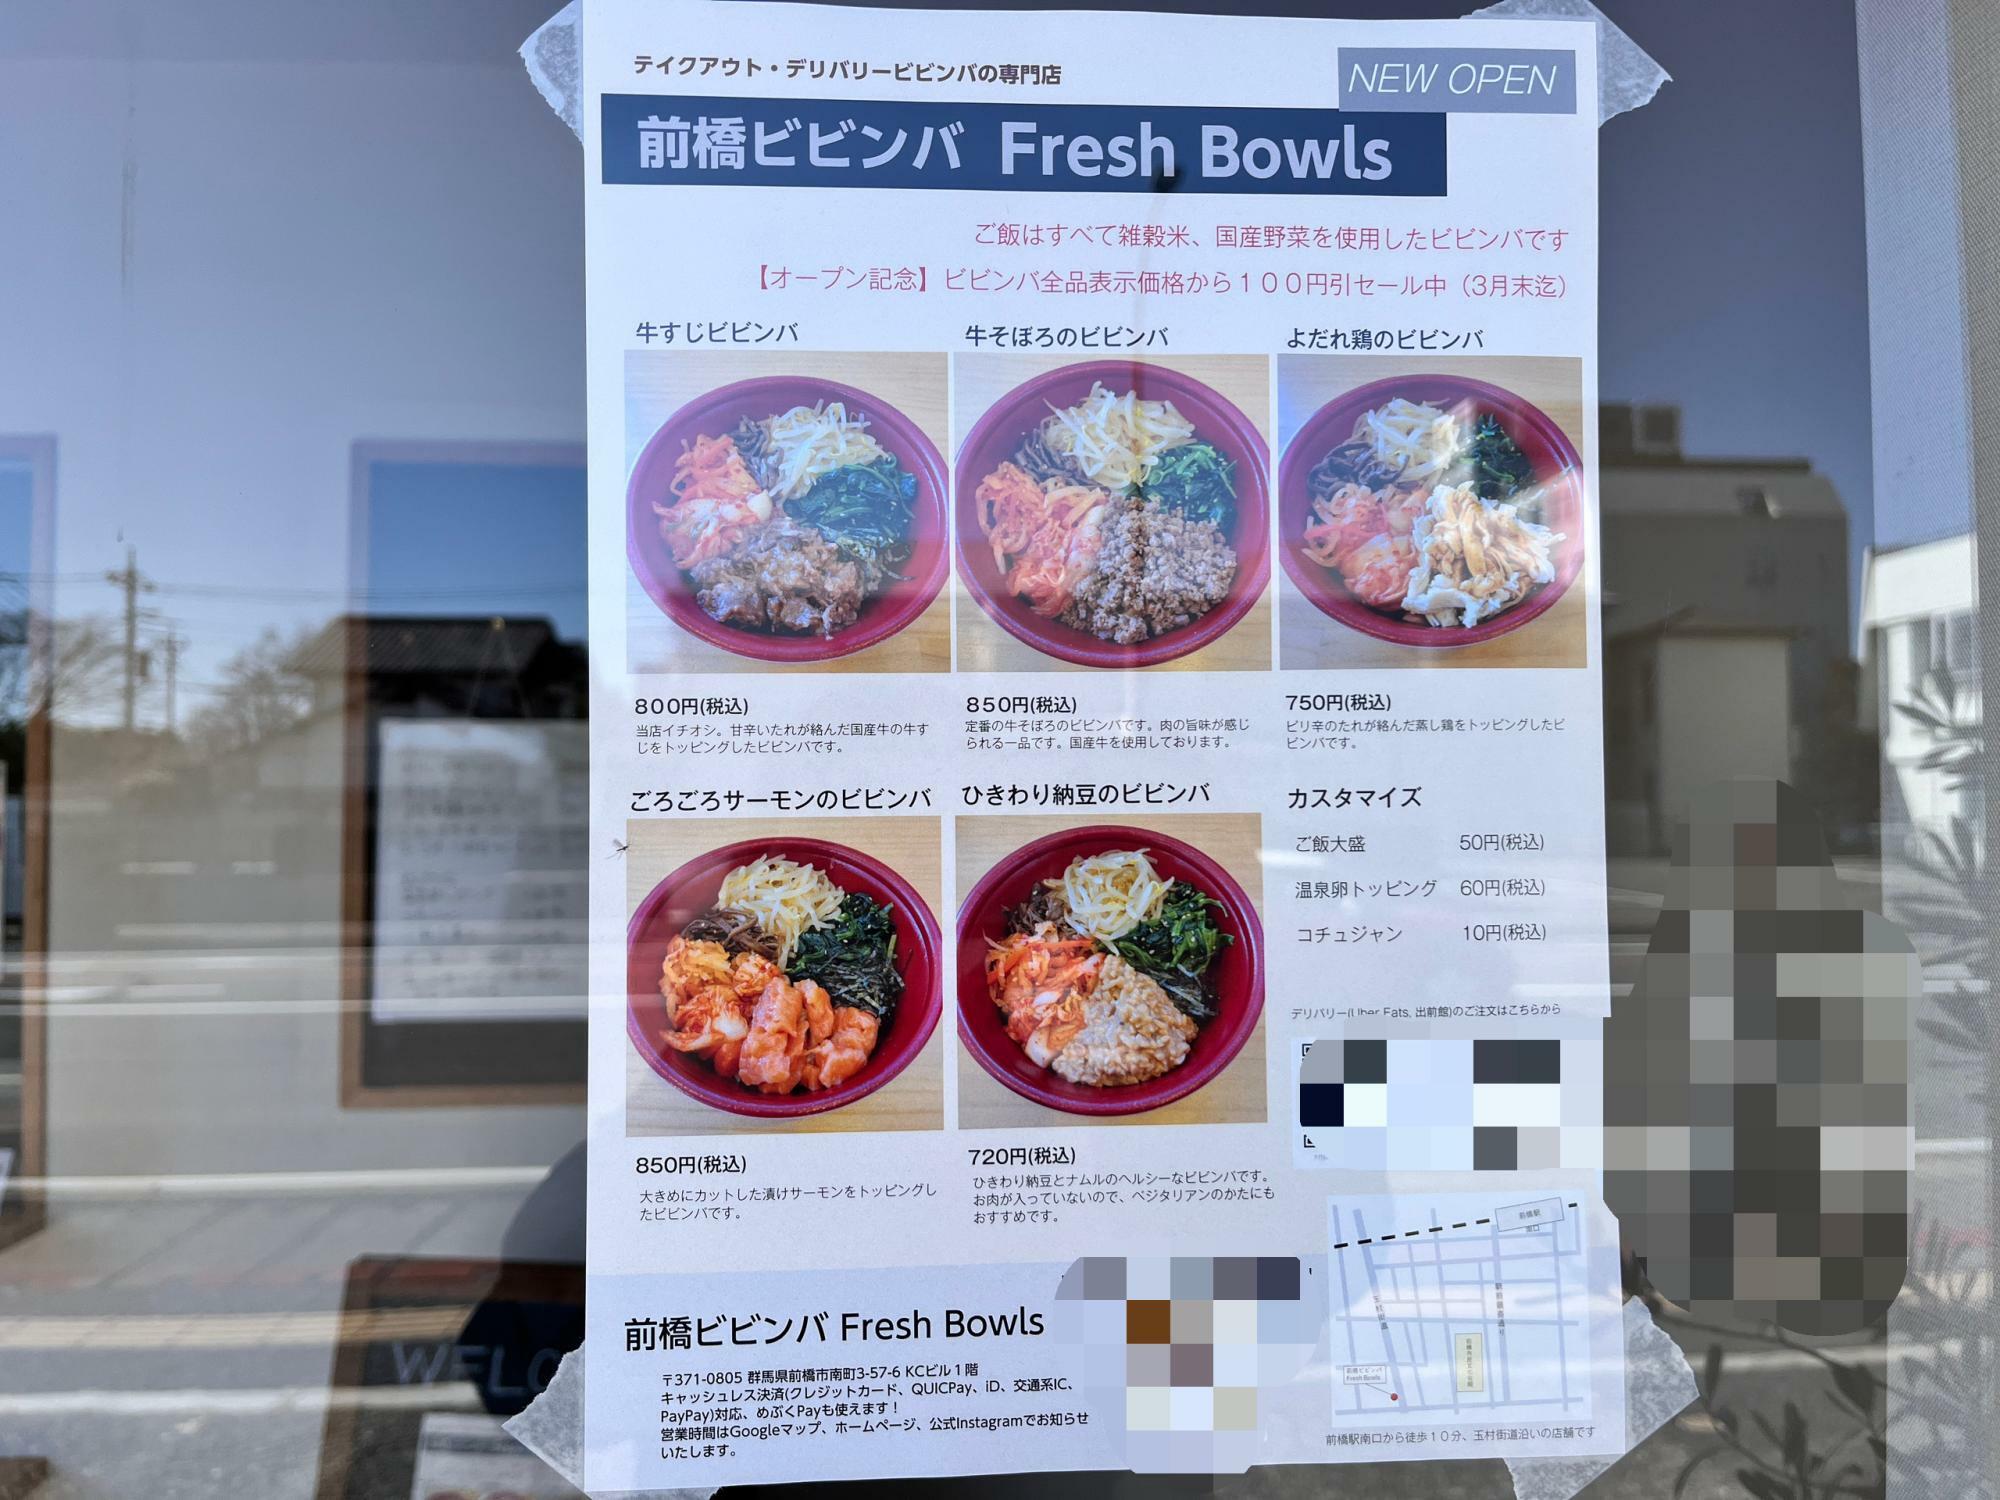 「前橋ビビンバ Fresh Bowls」店頭に掲示されているメニュー